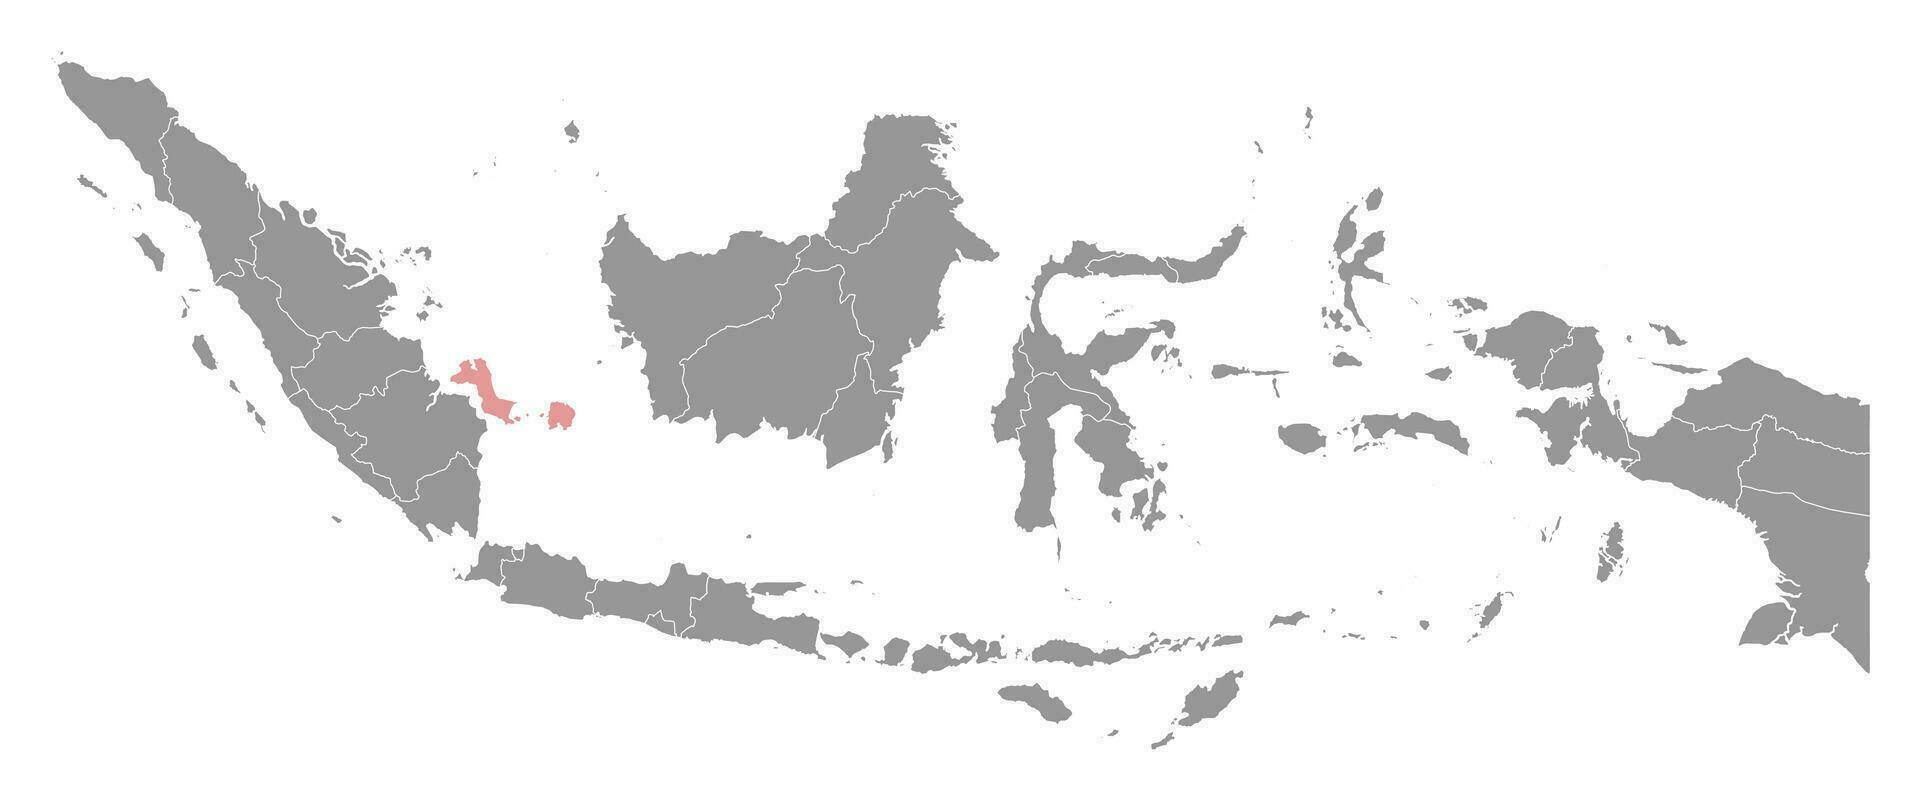 bangka credendo isole Provincia carta geografica, amministrativo divisione di Indonesia. vettore illustrazione.